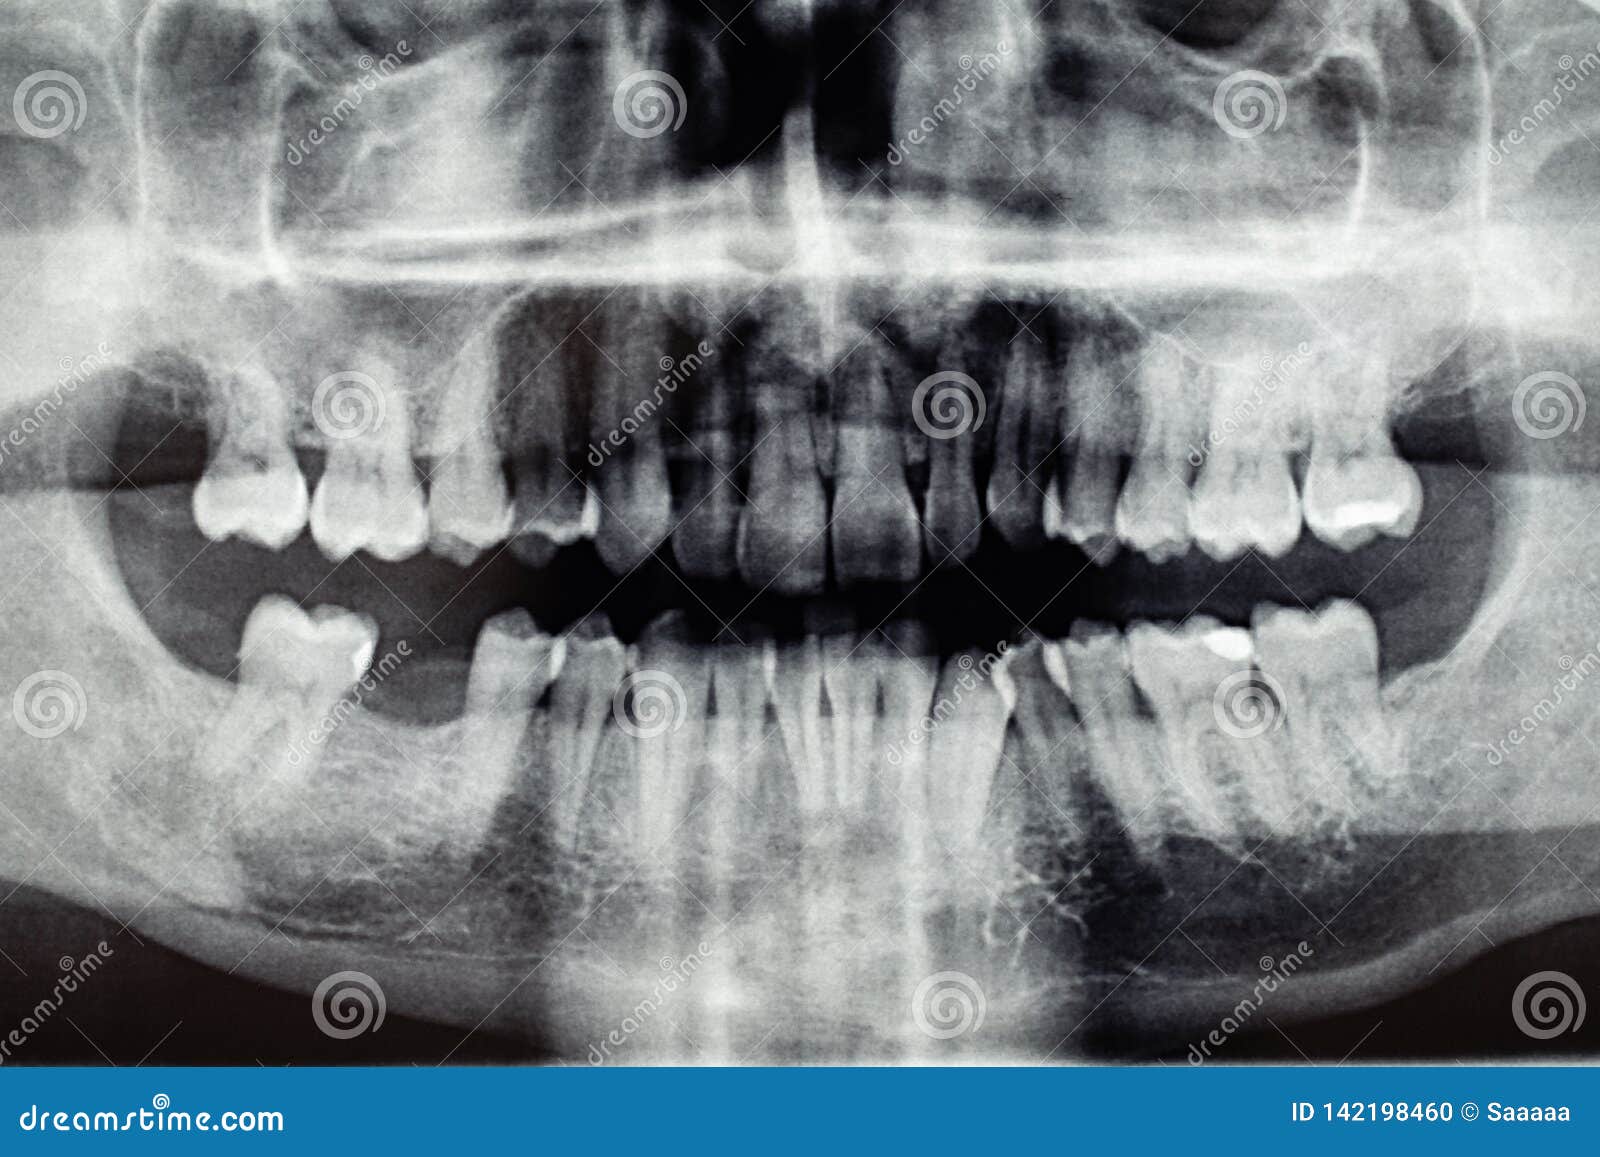 фото задних зубов